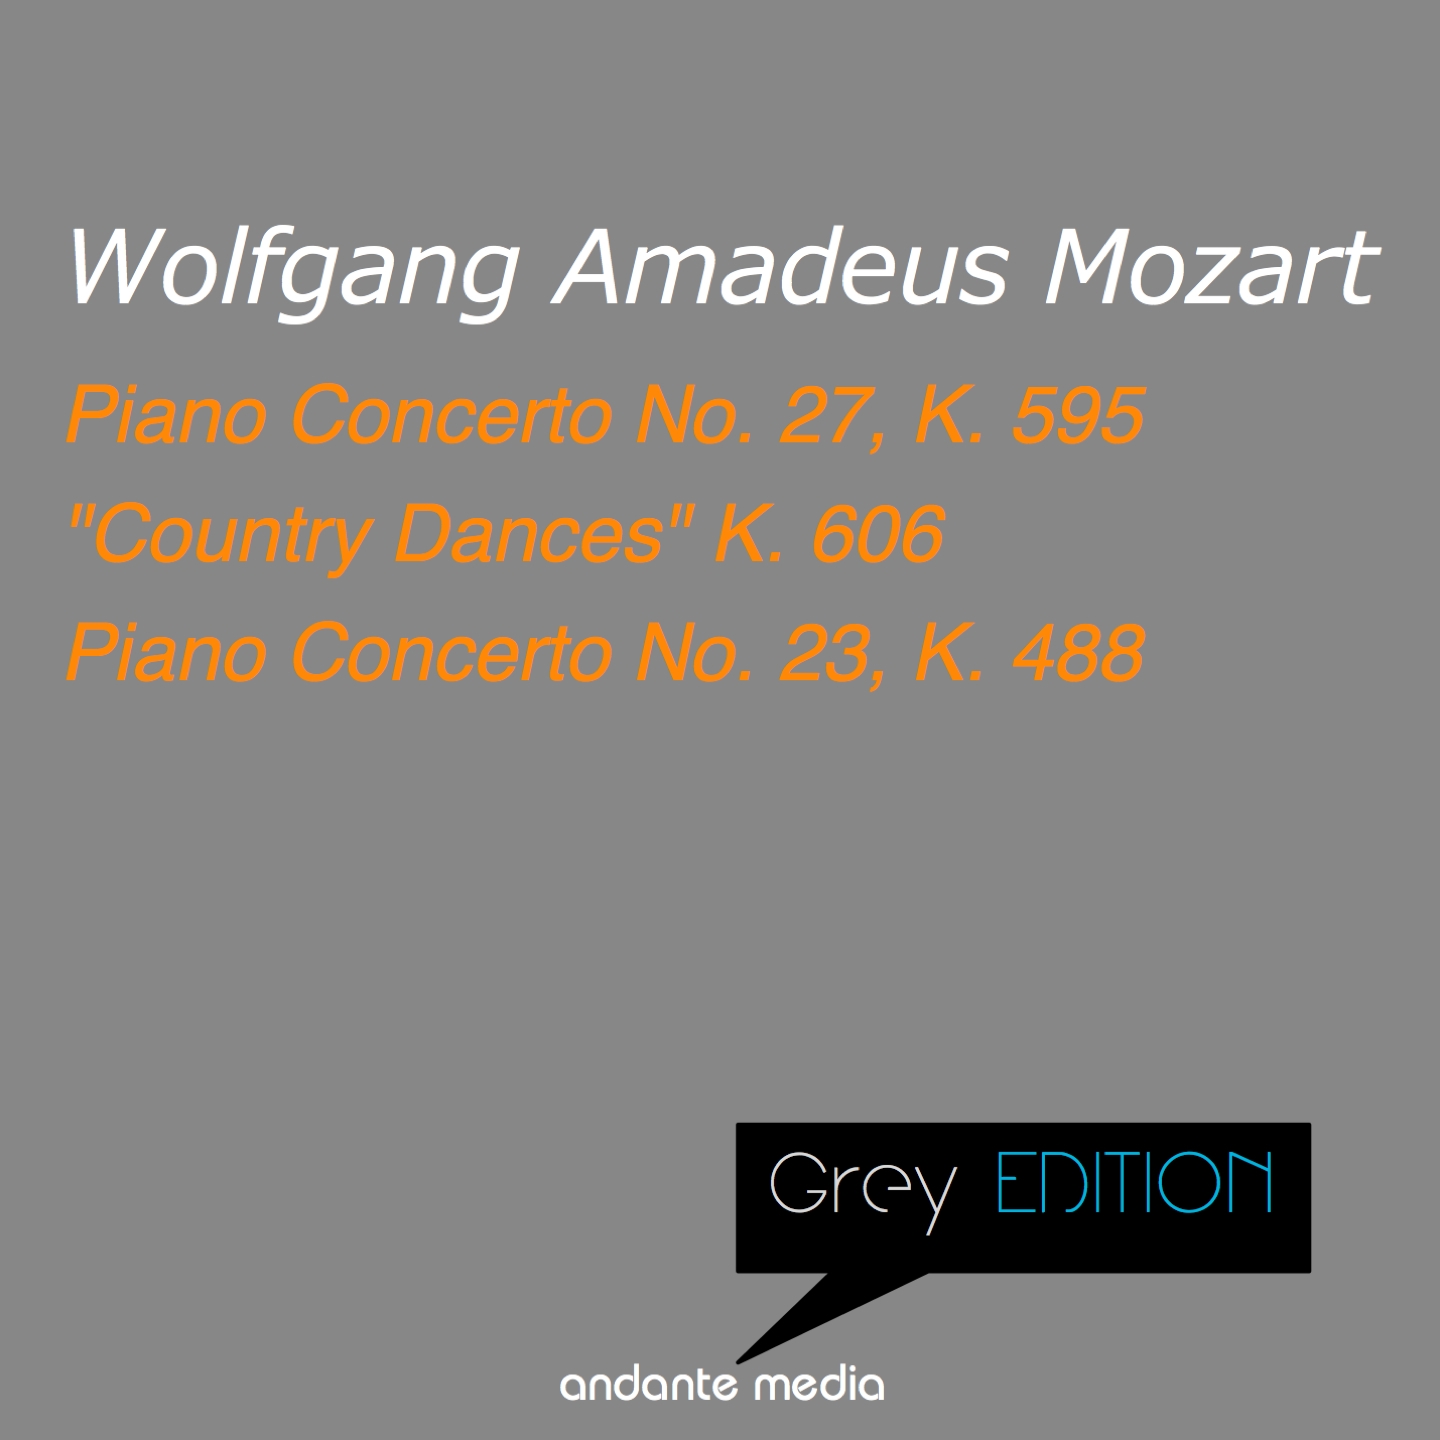 Grey Edition - Mozart: Piano Concerto No. 27, K. 595 & Piano Concerto No. 23, K. 488